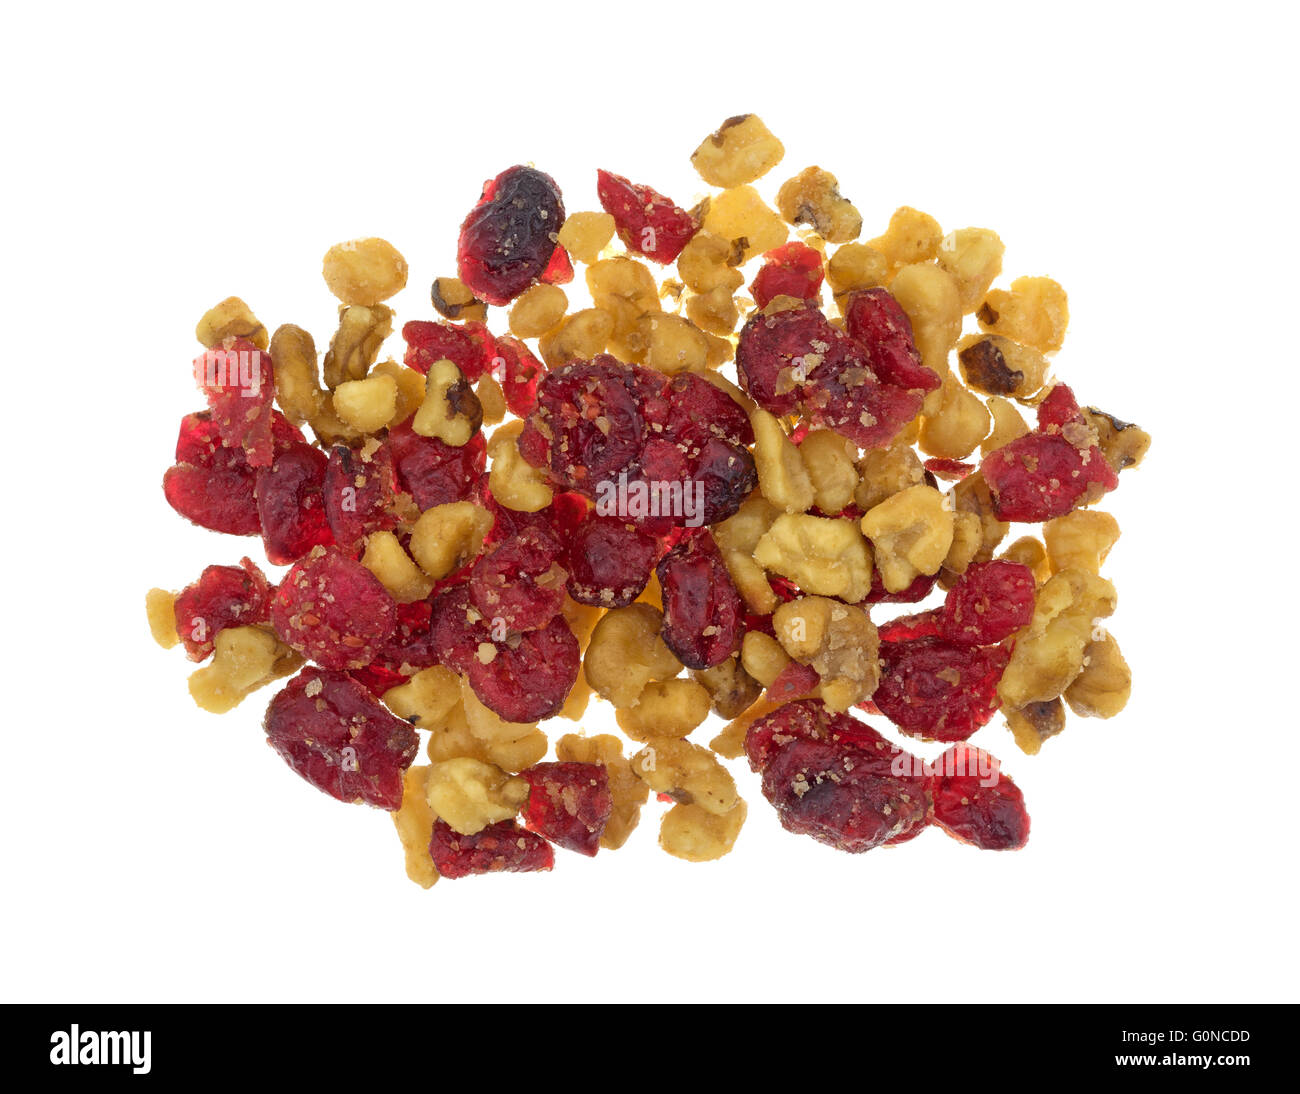 Draufsicht eines Teils von Cranberries und Walnüssen isoliert auf einem weißen Hintergrund. Stockfoto